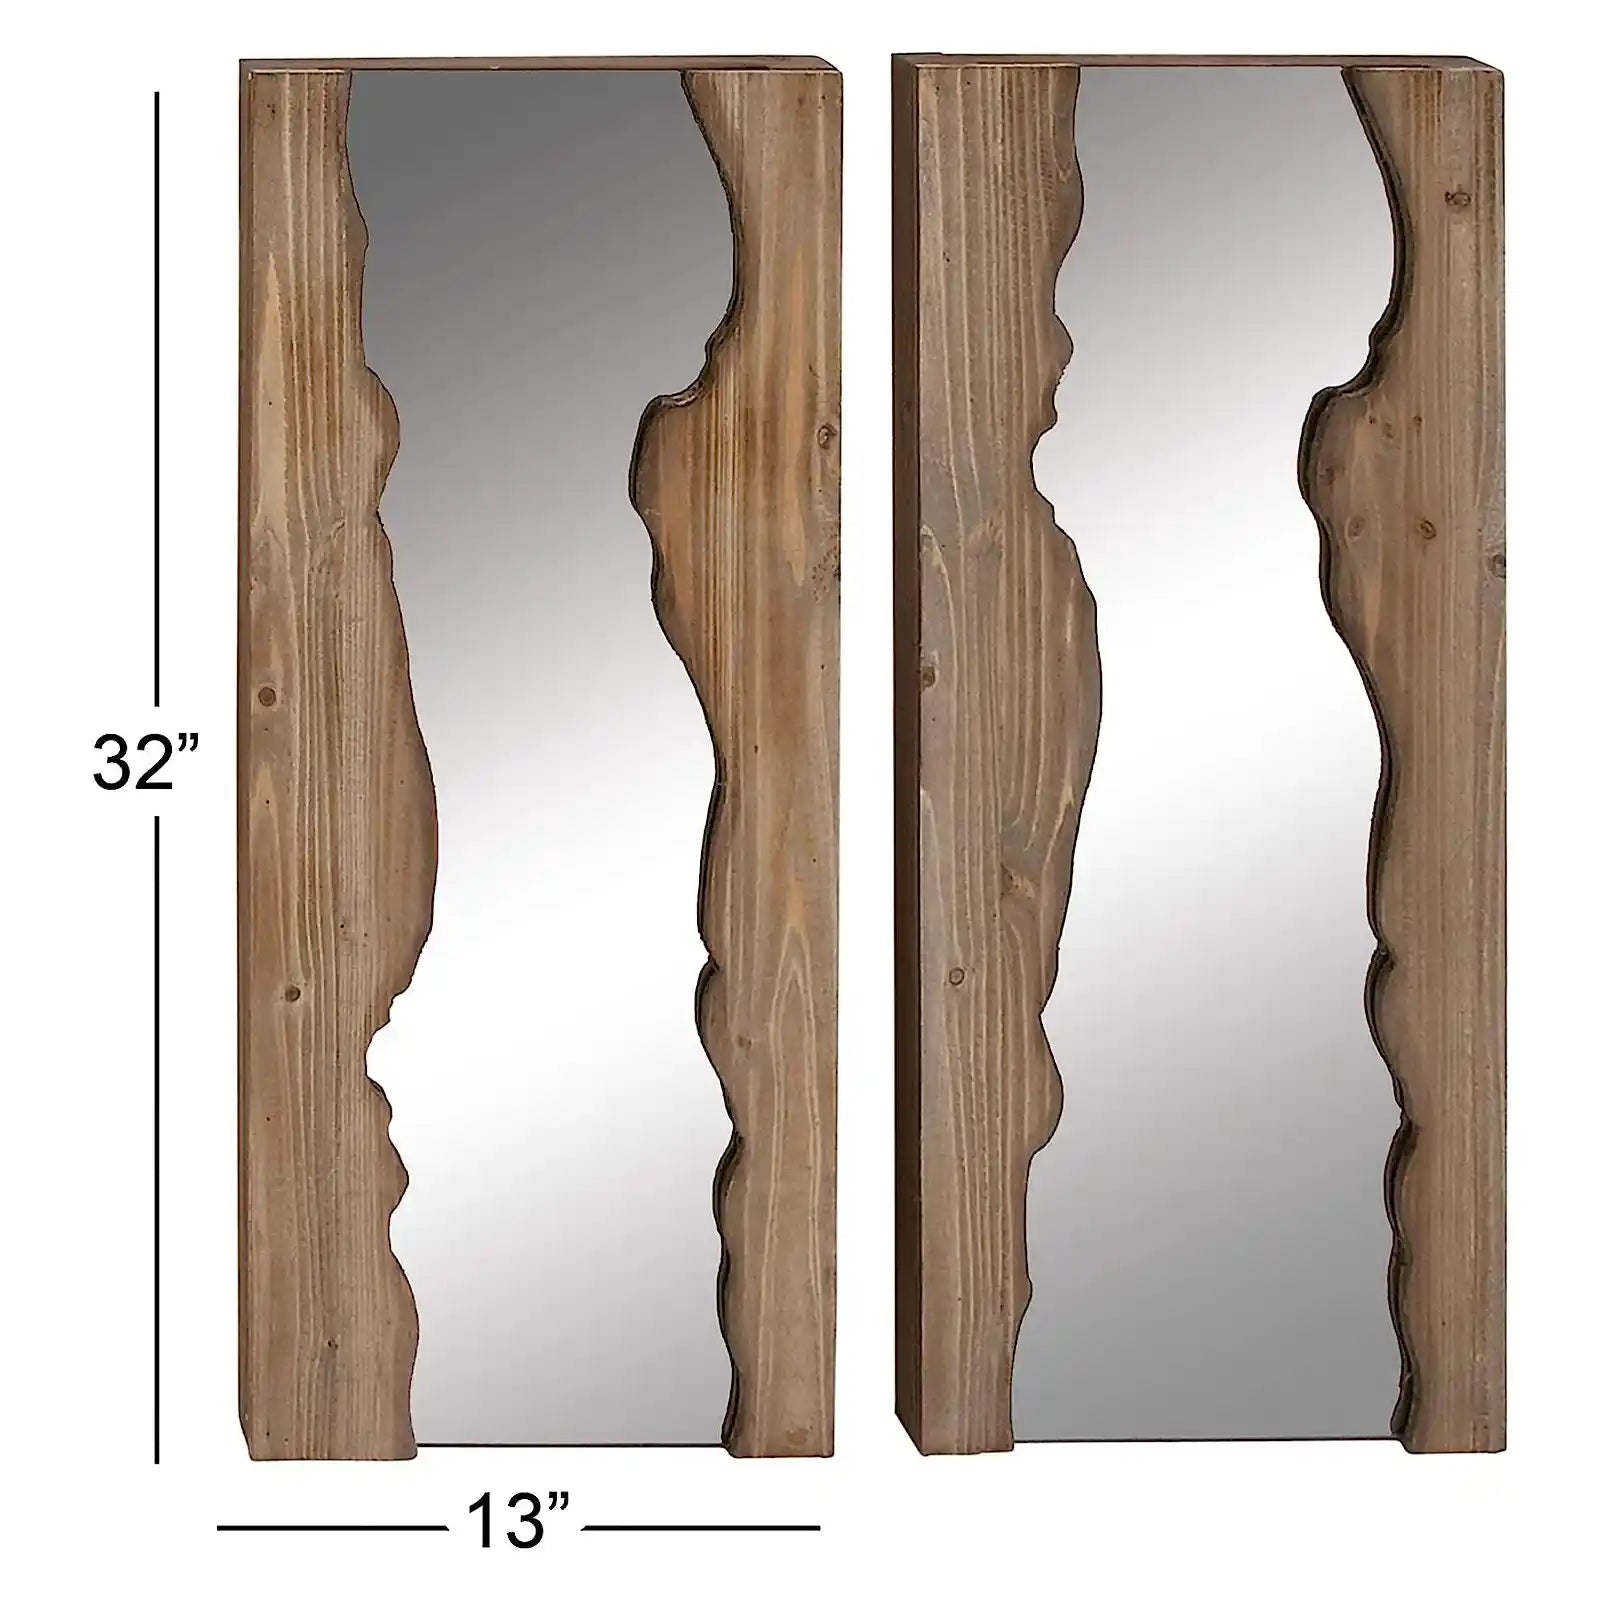 Espejo de pared con borde vivo hecho a mano de madera maciza. Juego de 2 